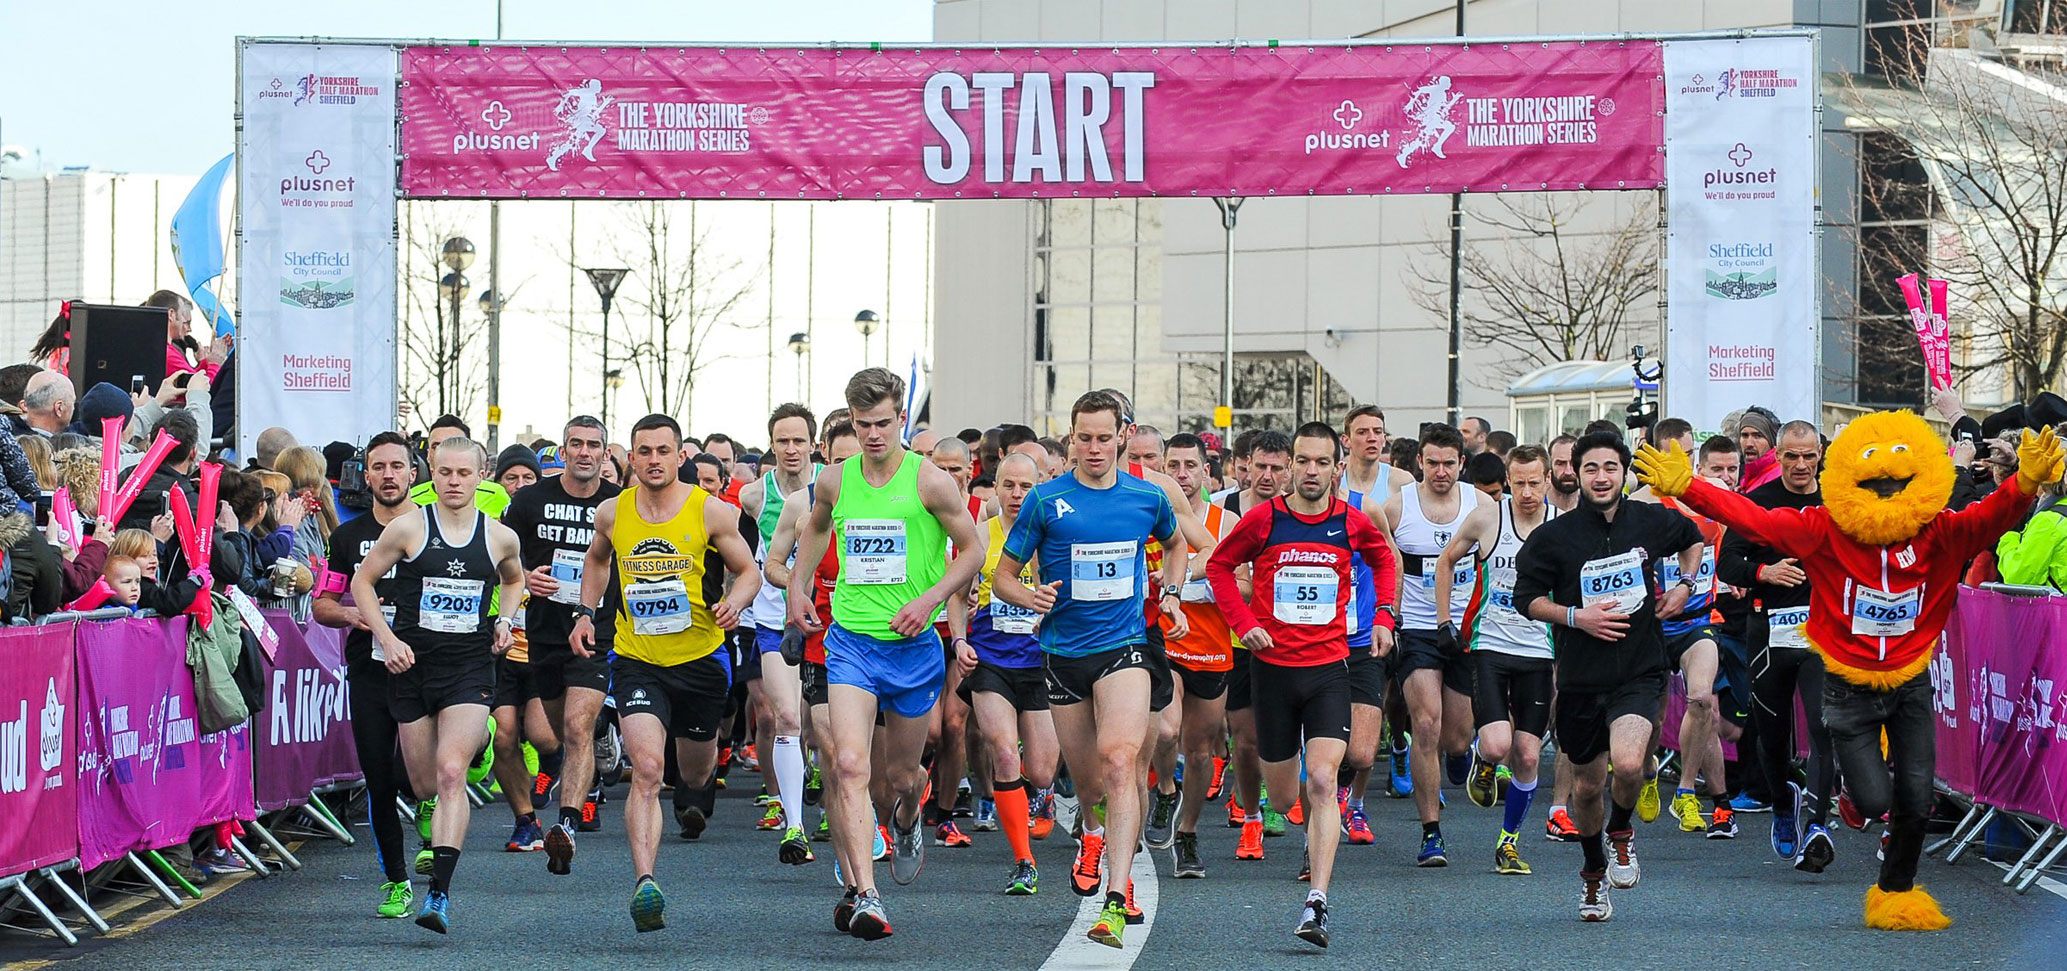 Run Sheffield Half Marathon for Lost Chord Charity